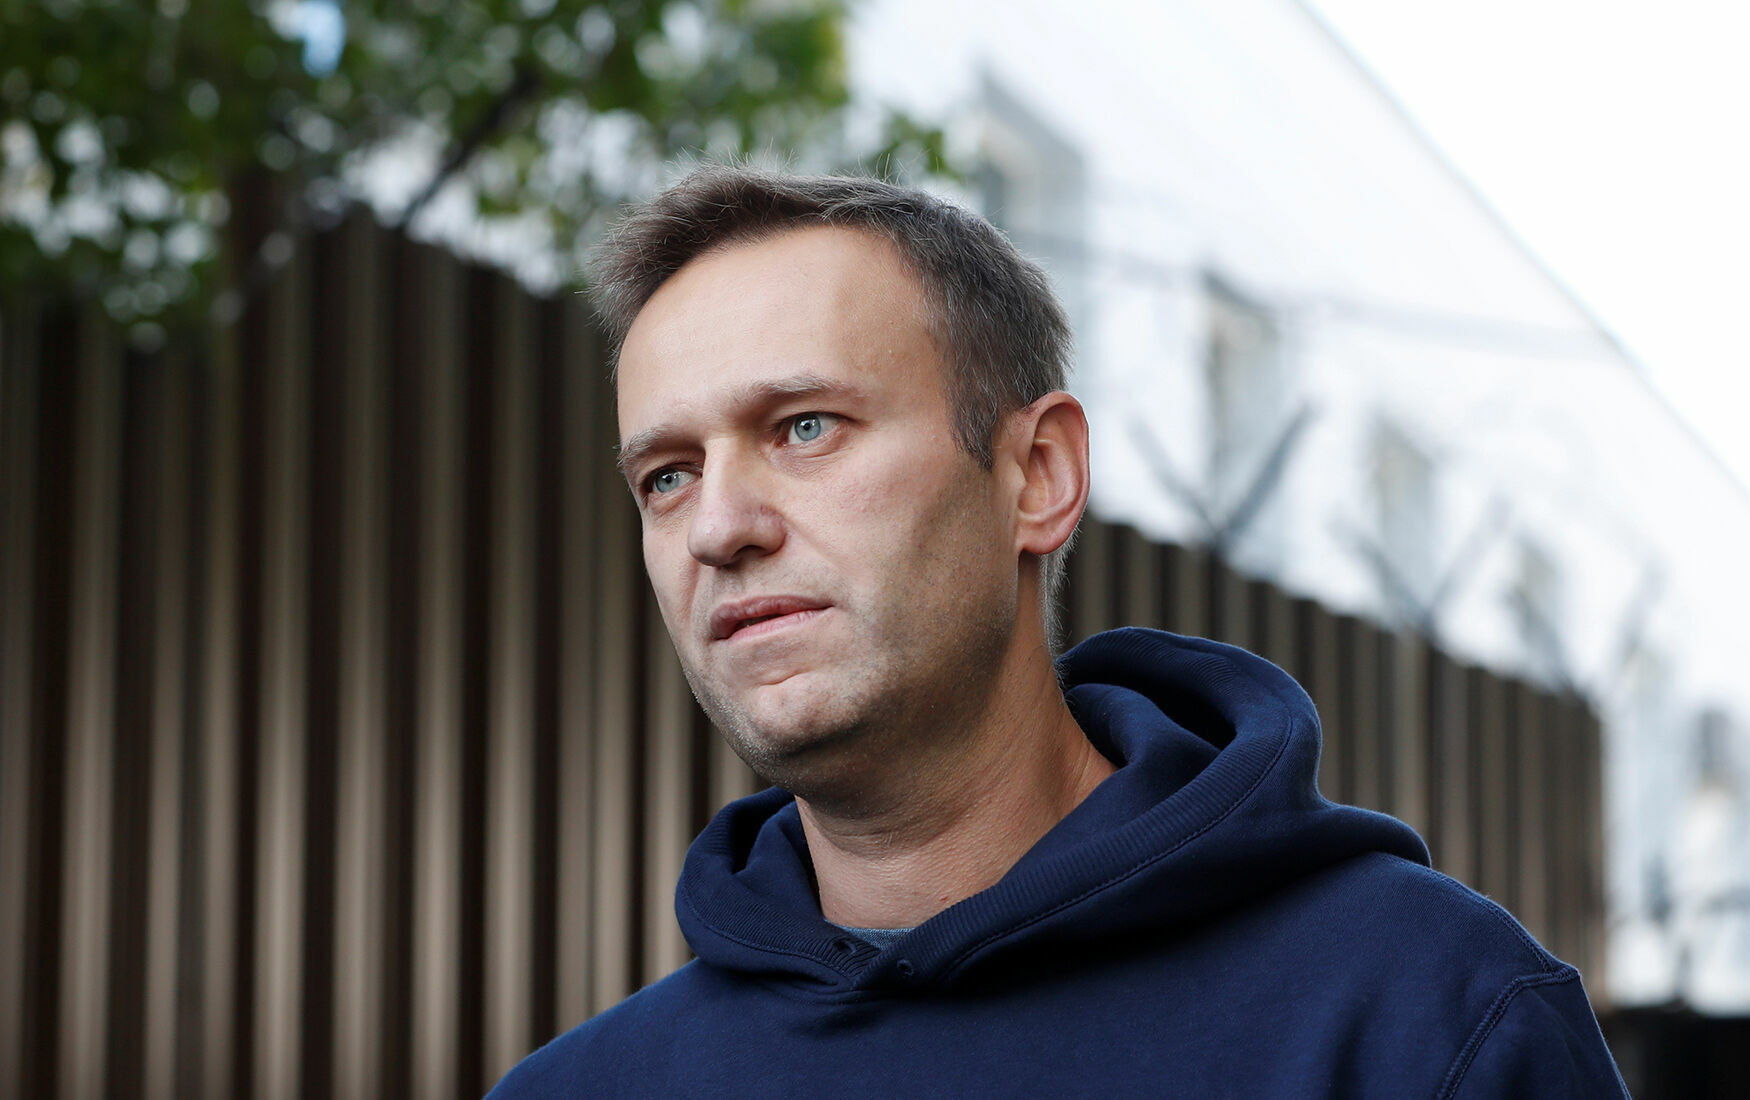 Причиной комы Навального врачи назвали "низкий сахар" в крови